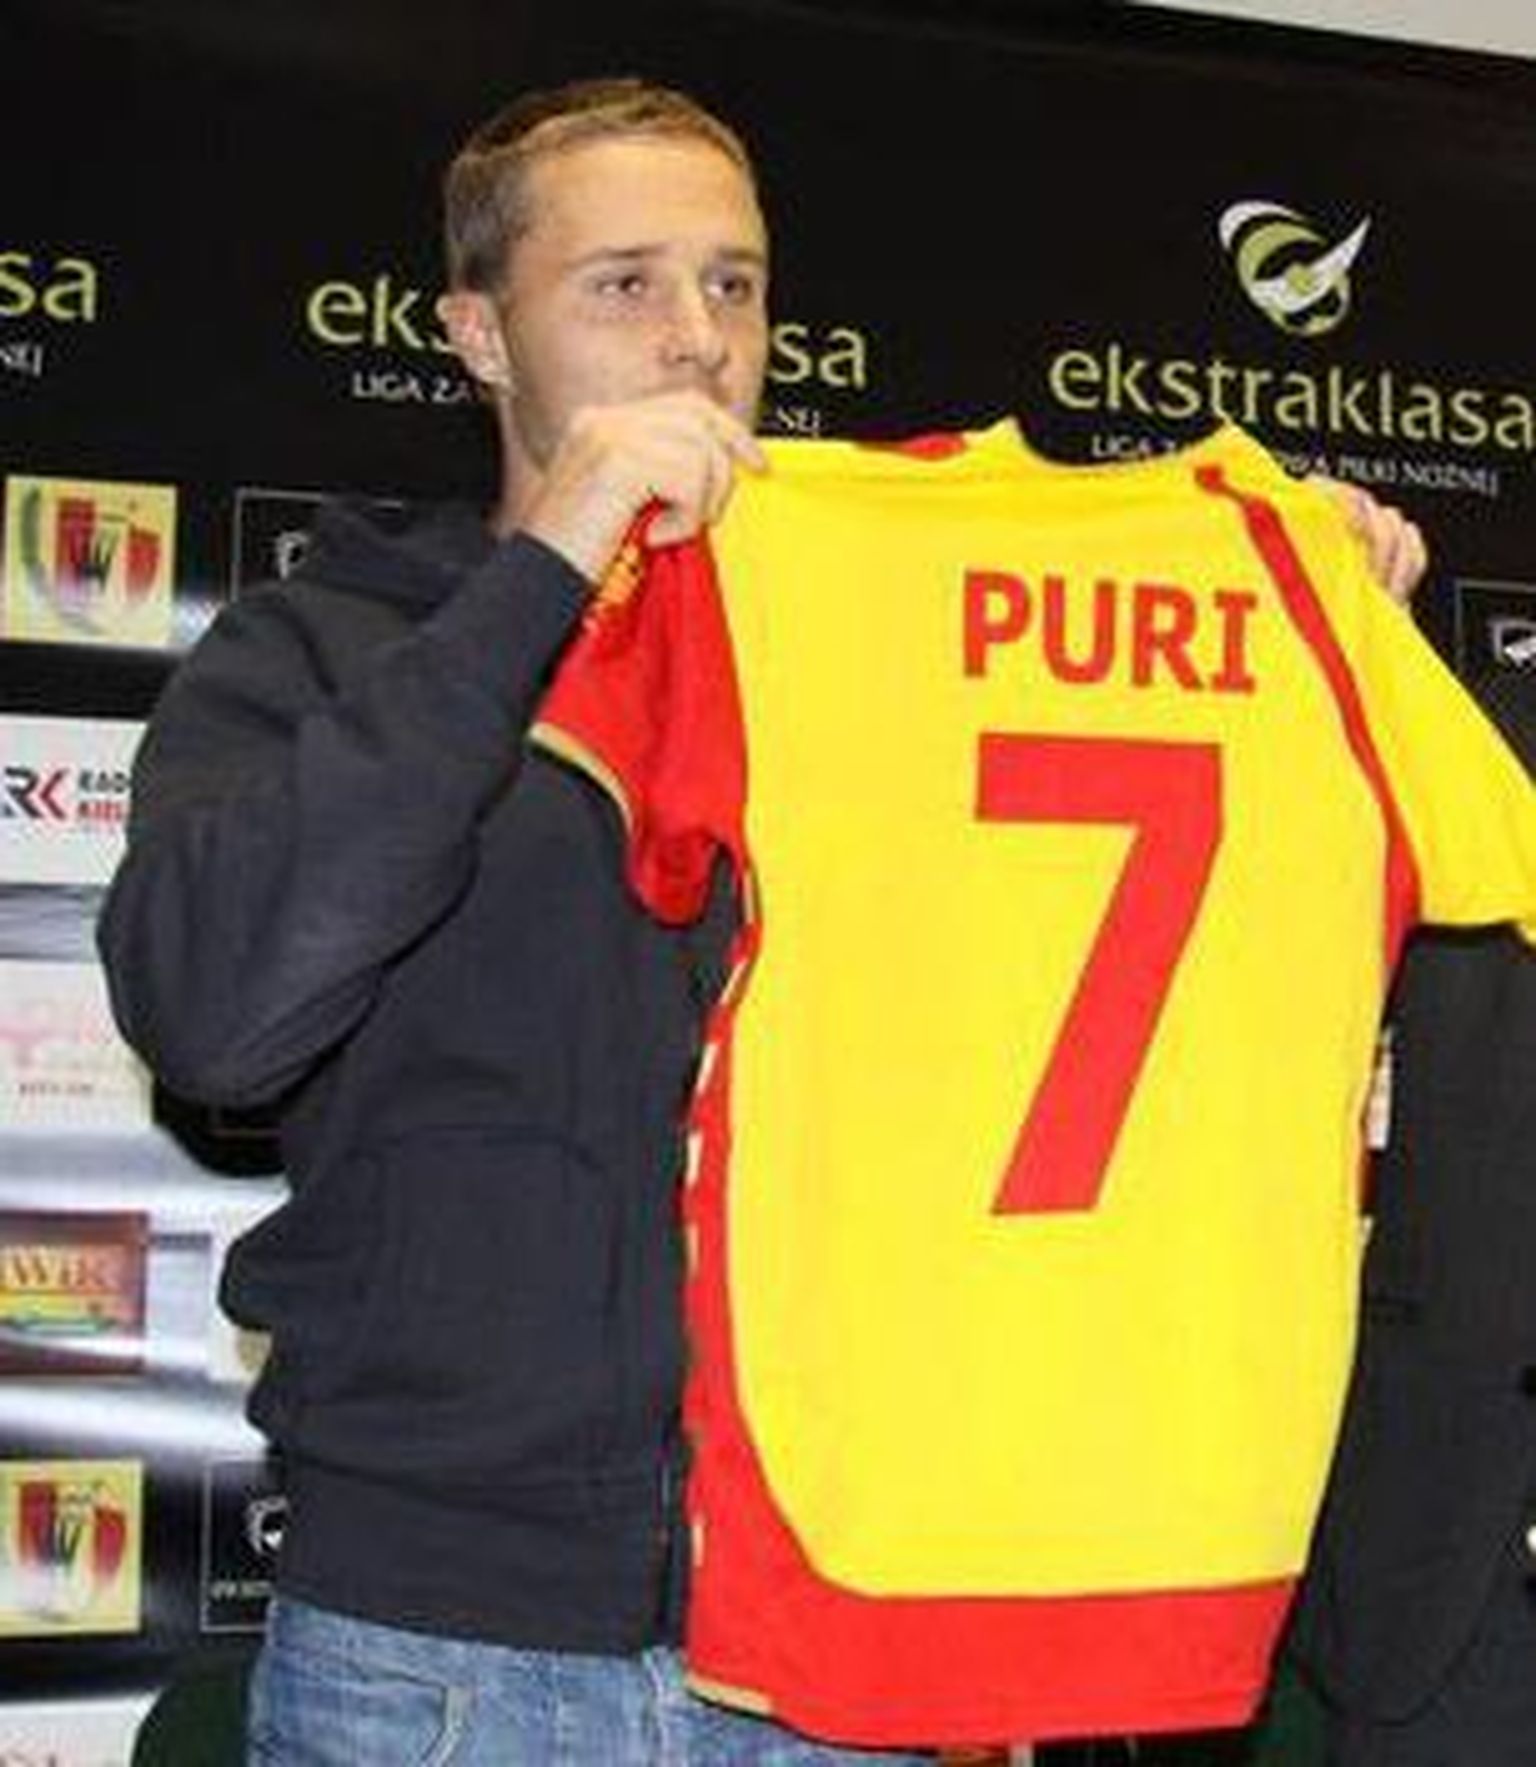 Sander Puri